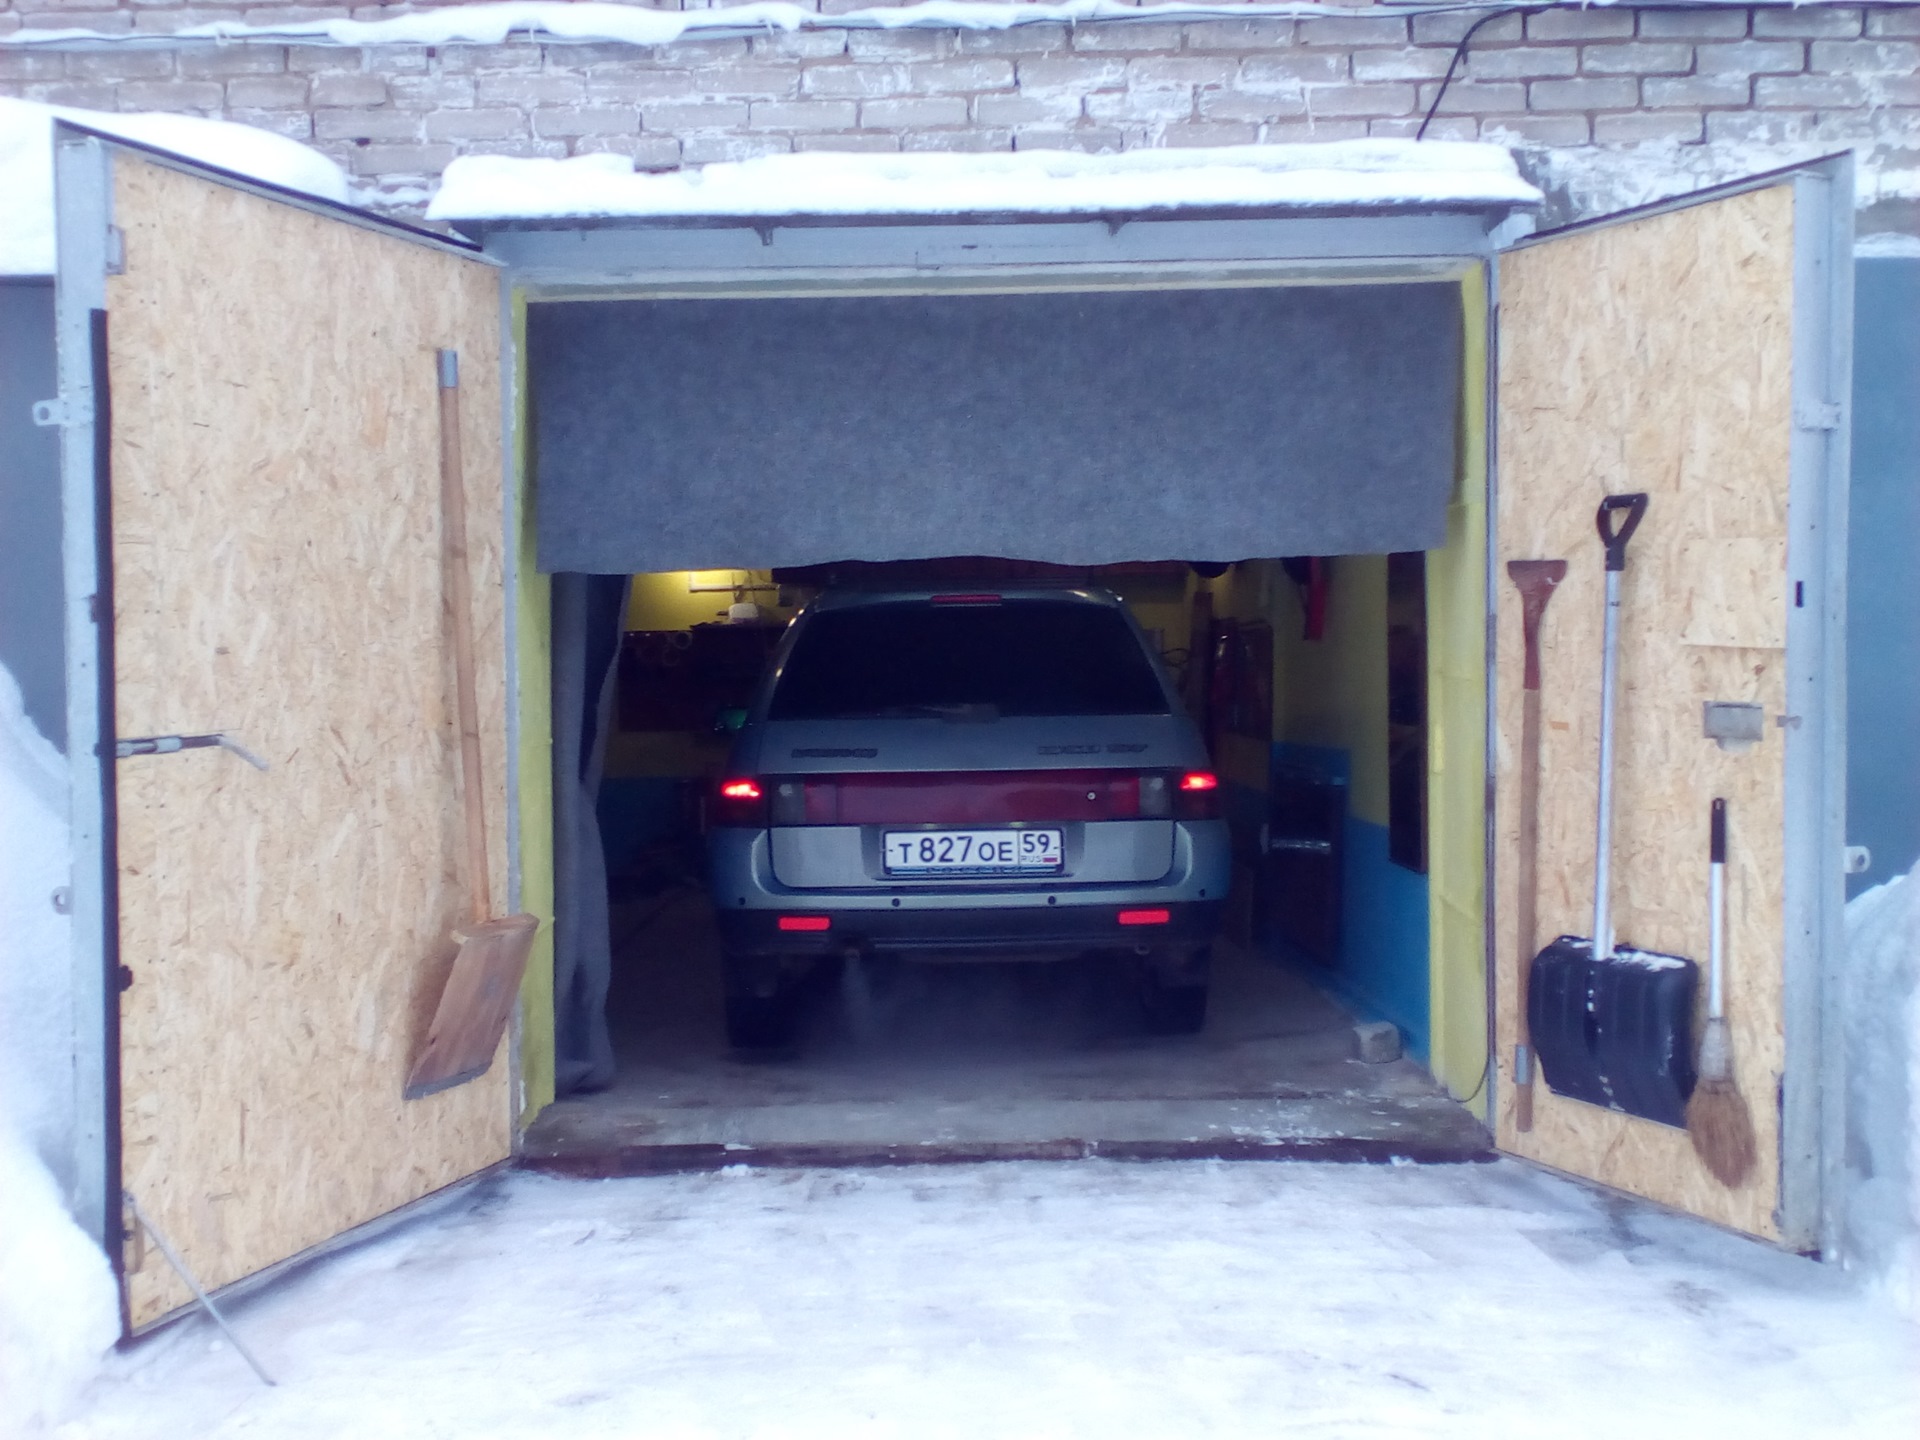 Gave head garage